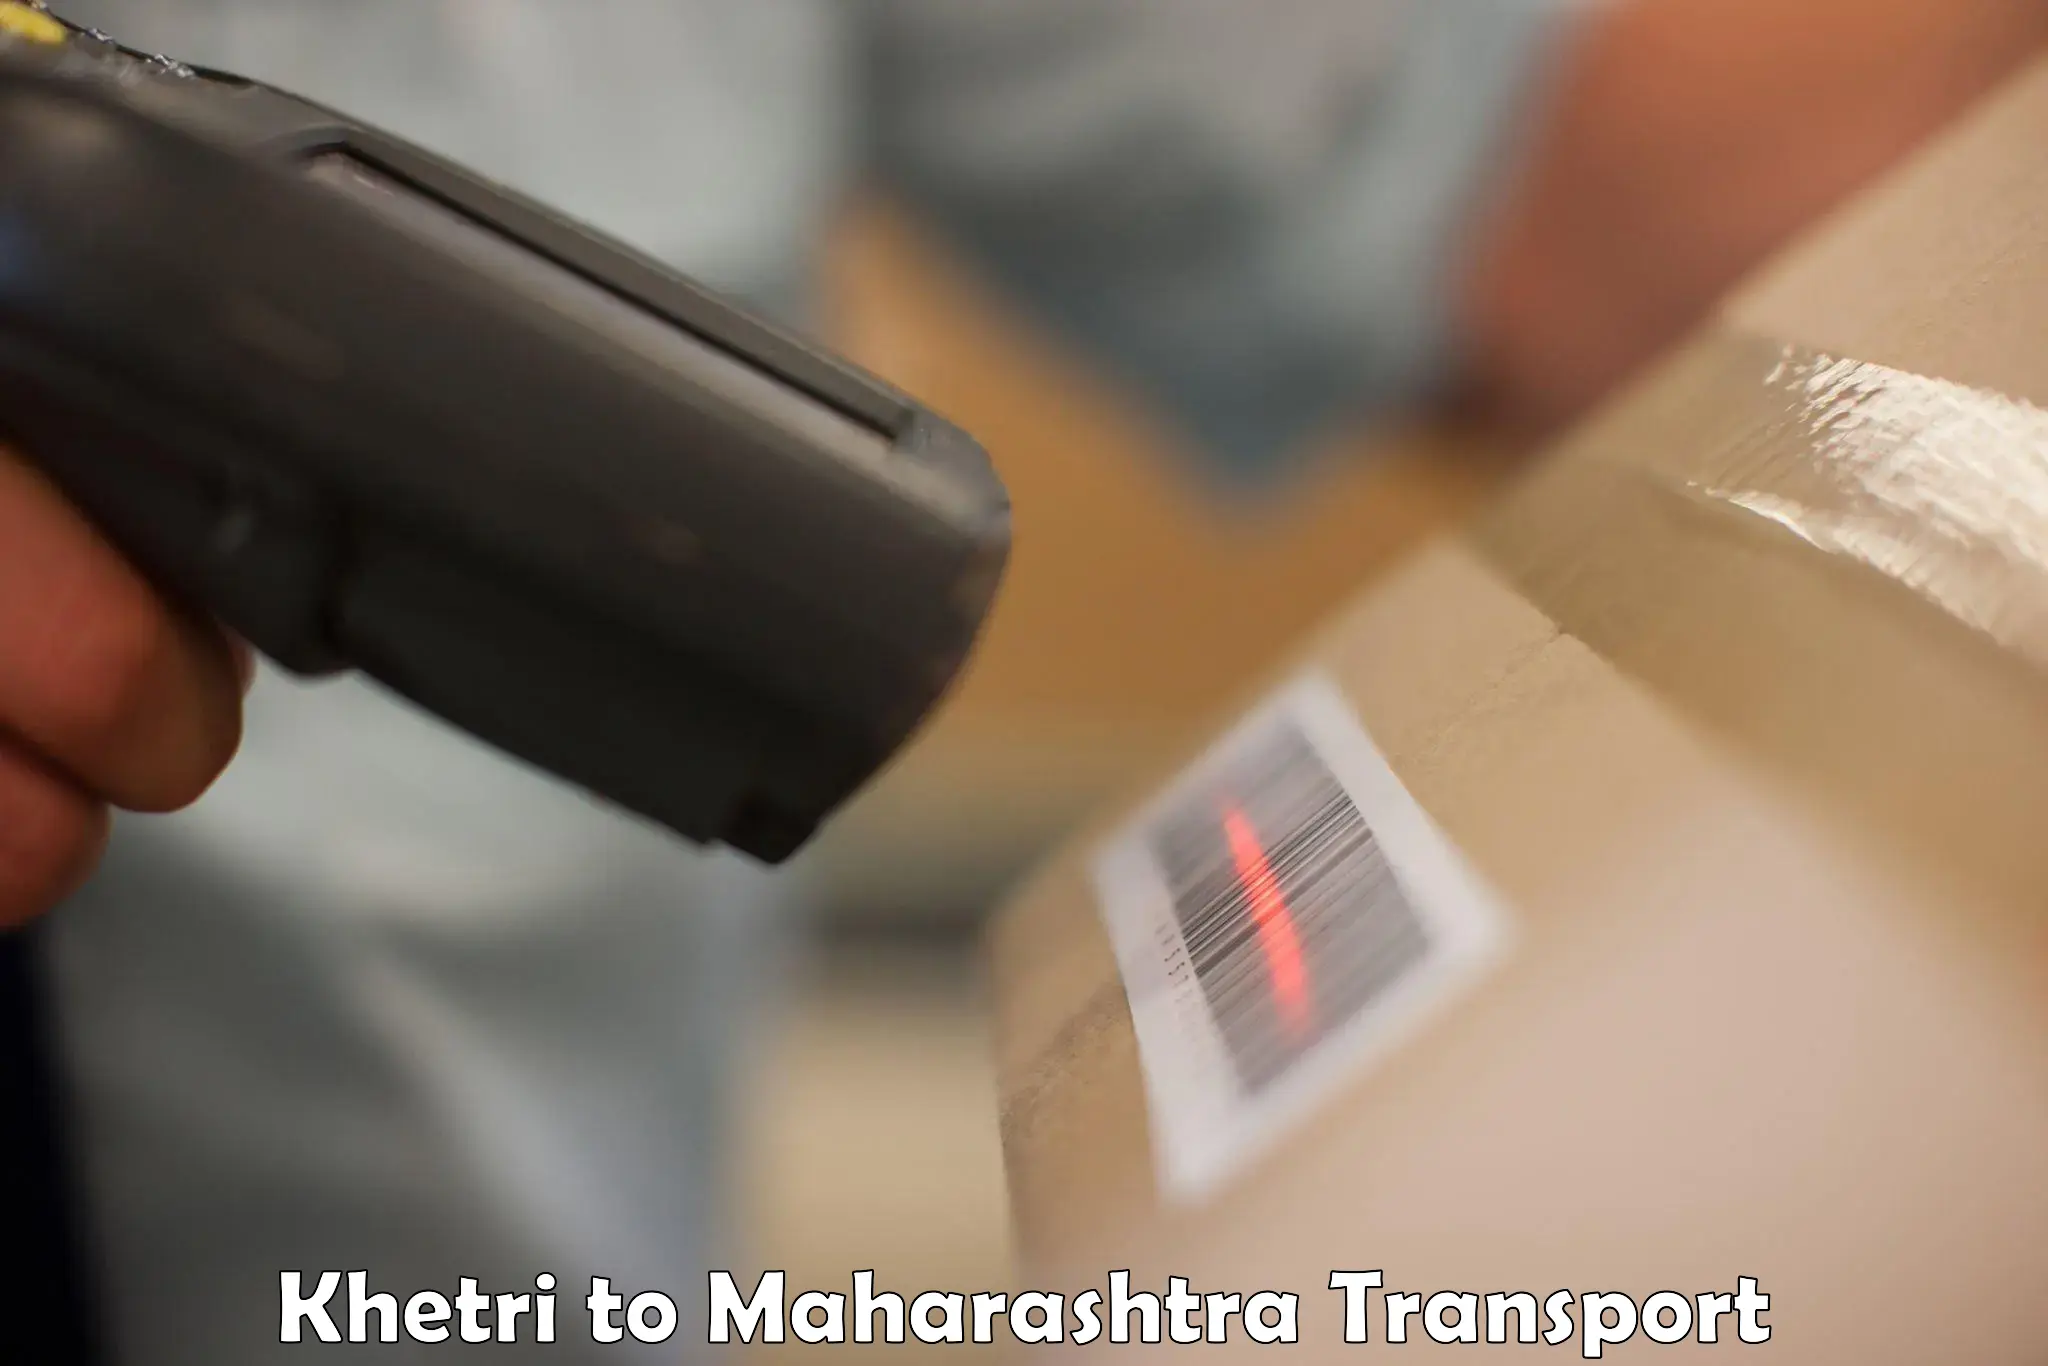 Cargo train transport services Khetri to Maharashtra